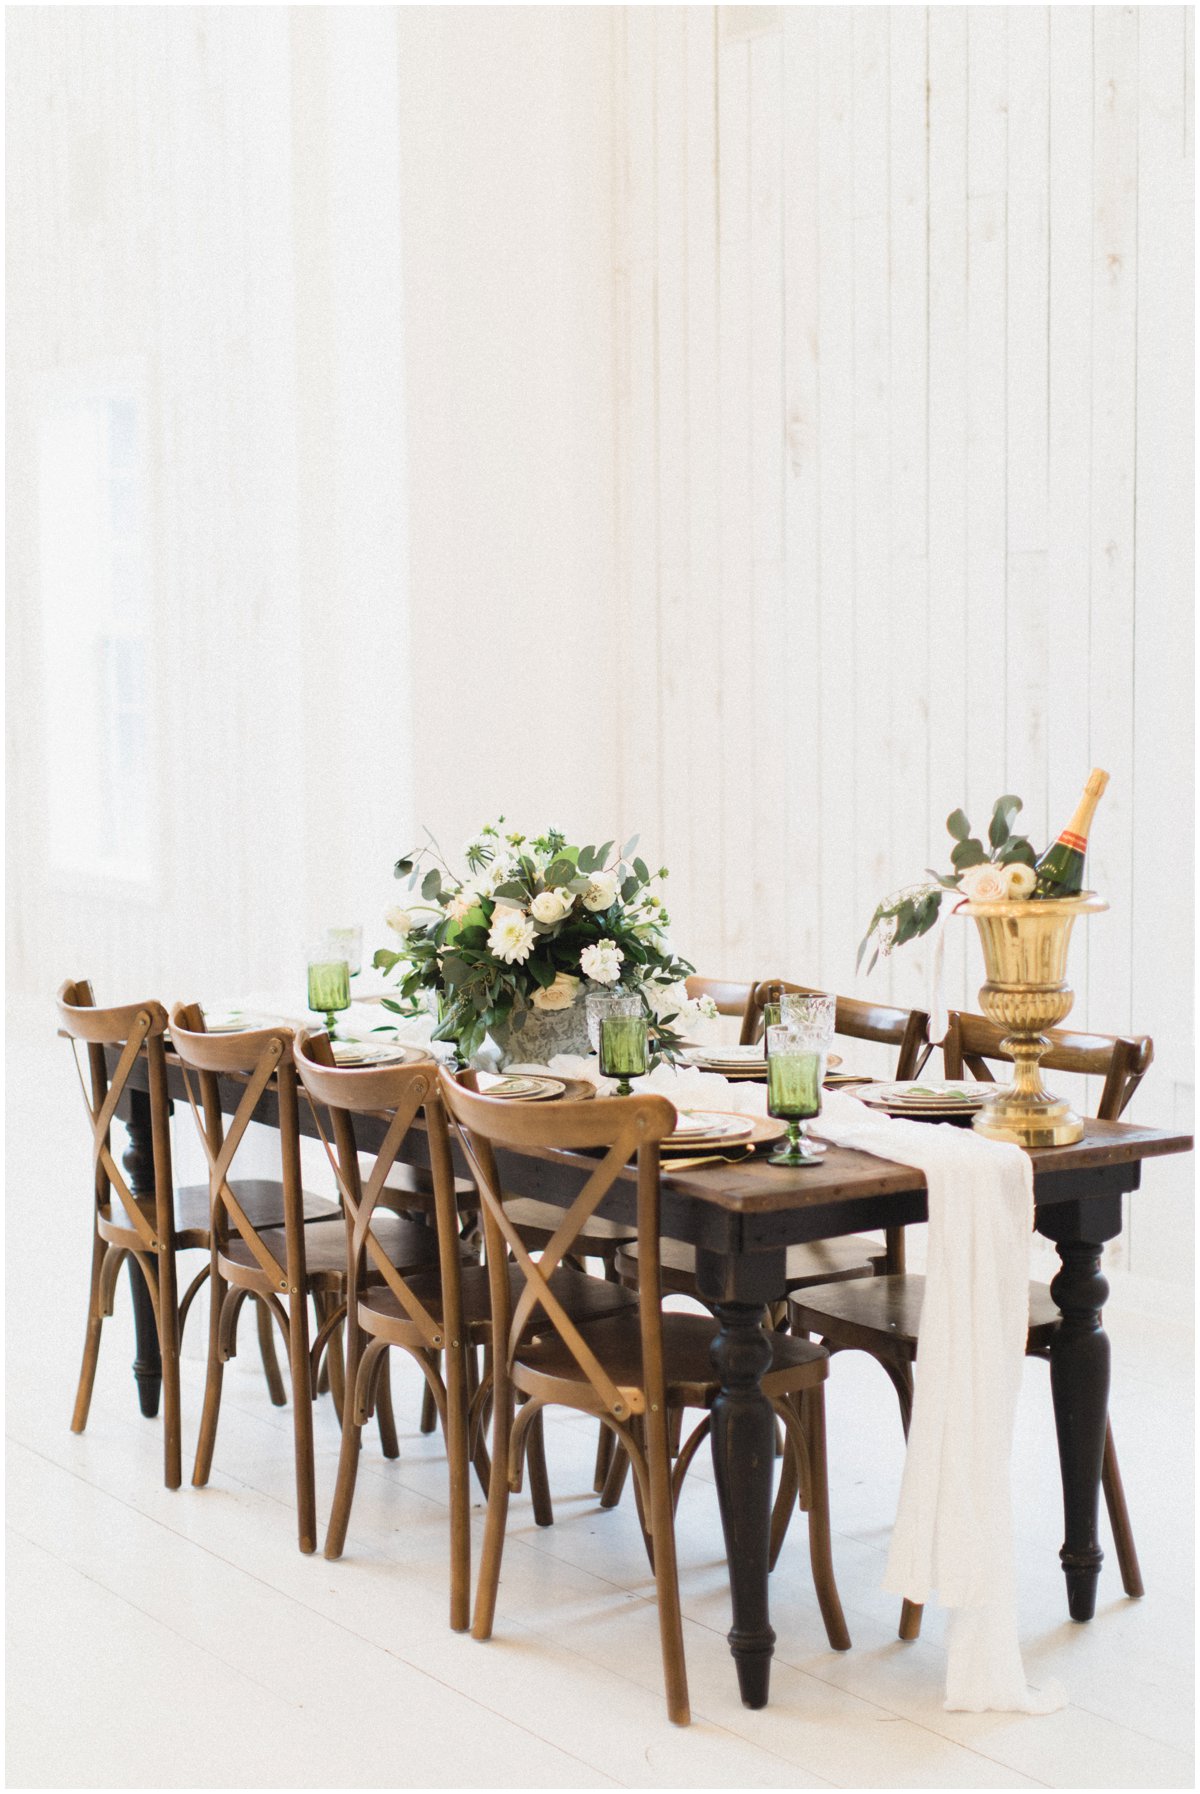 Ethereal wedding table